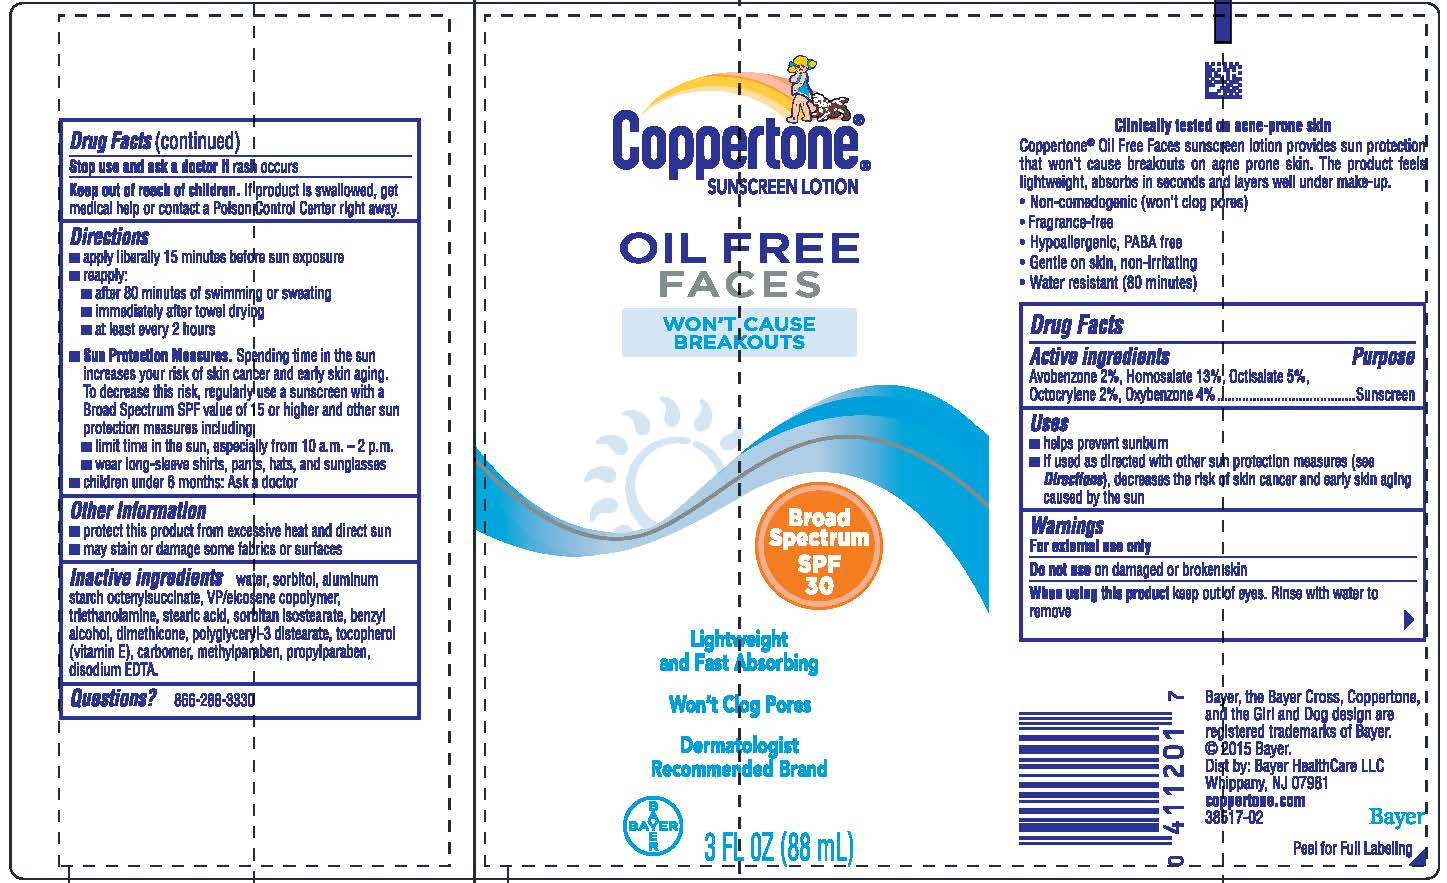 Coppertone Faces SPF 30 label